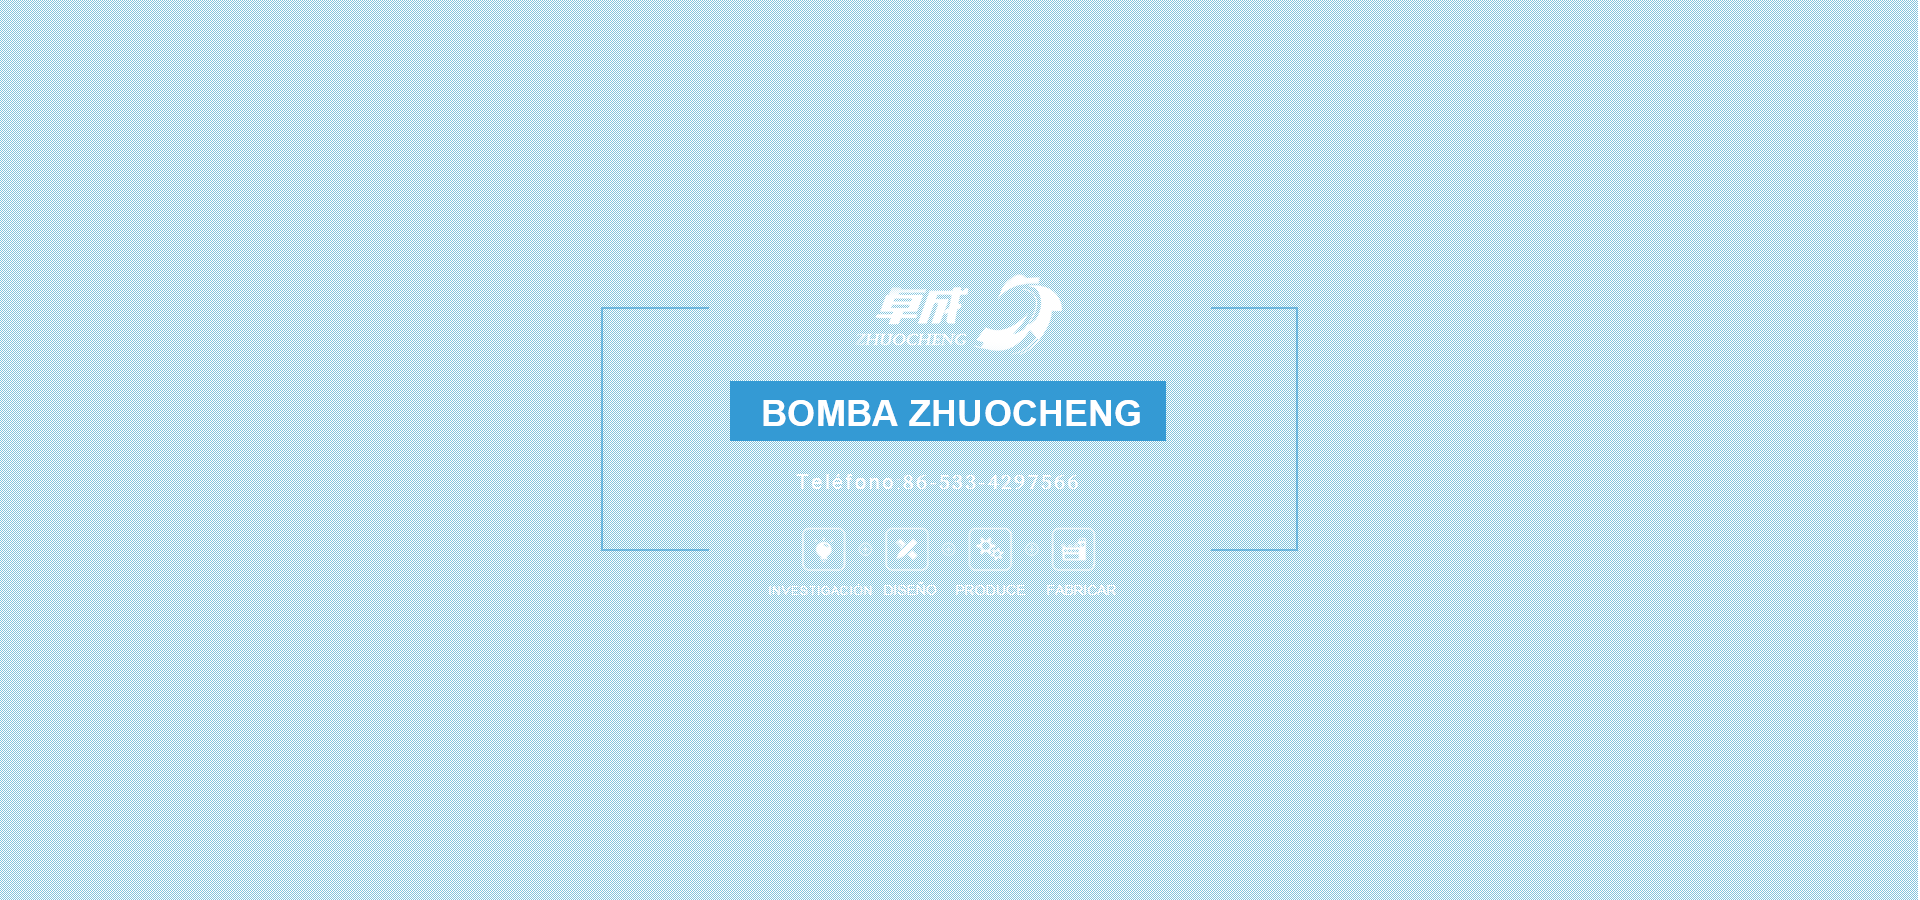 Bomba Zhuocheng